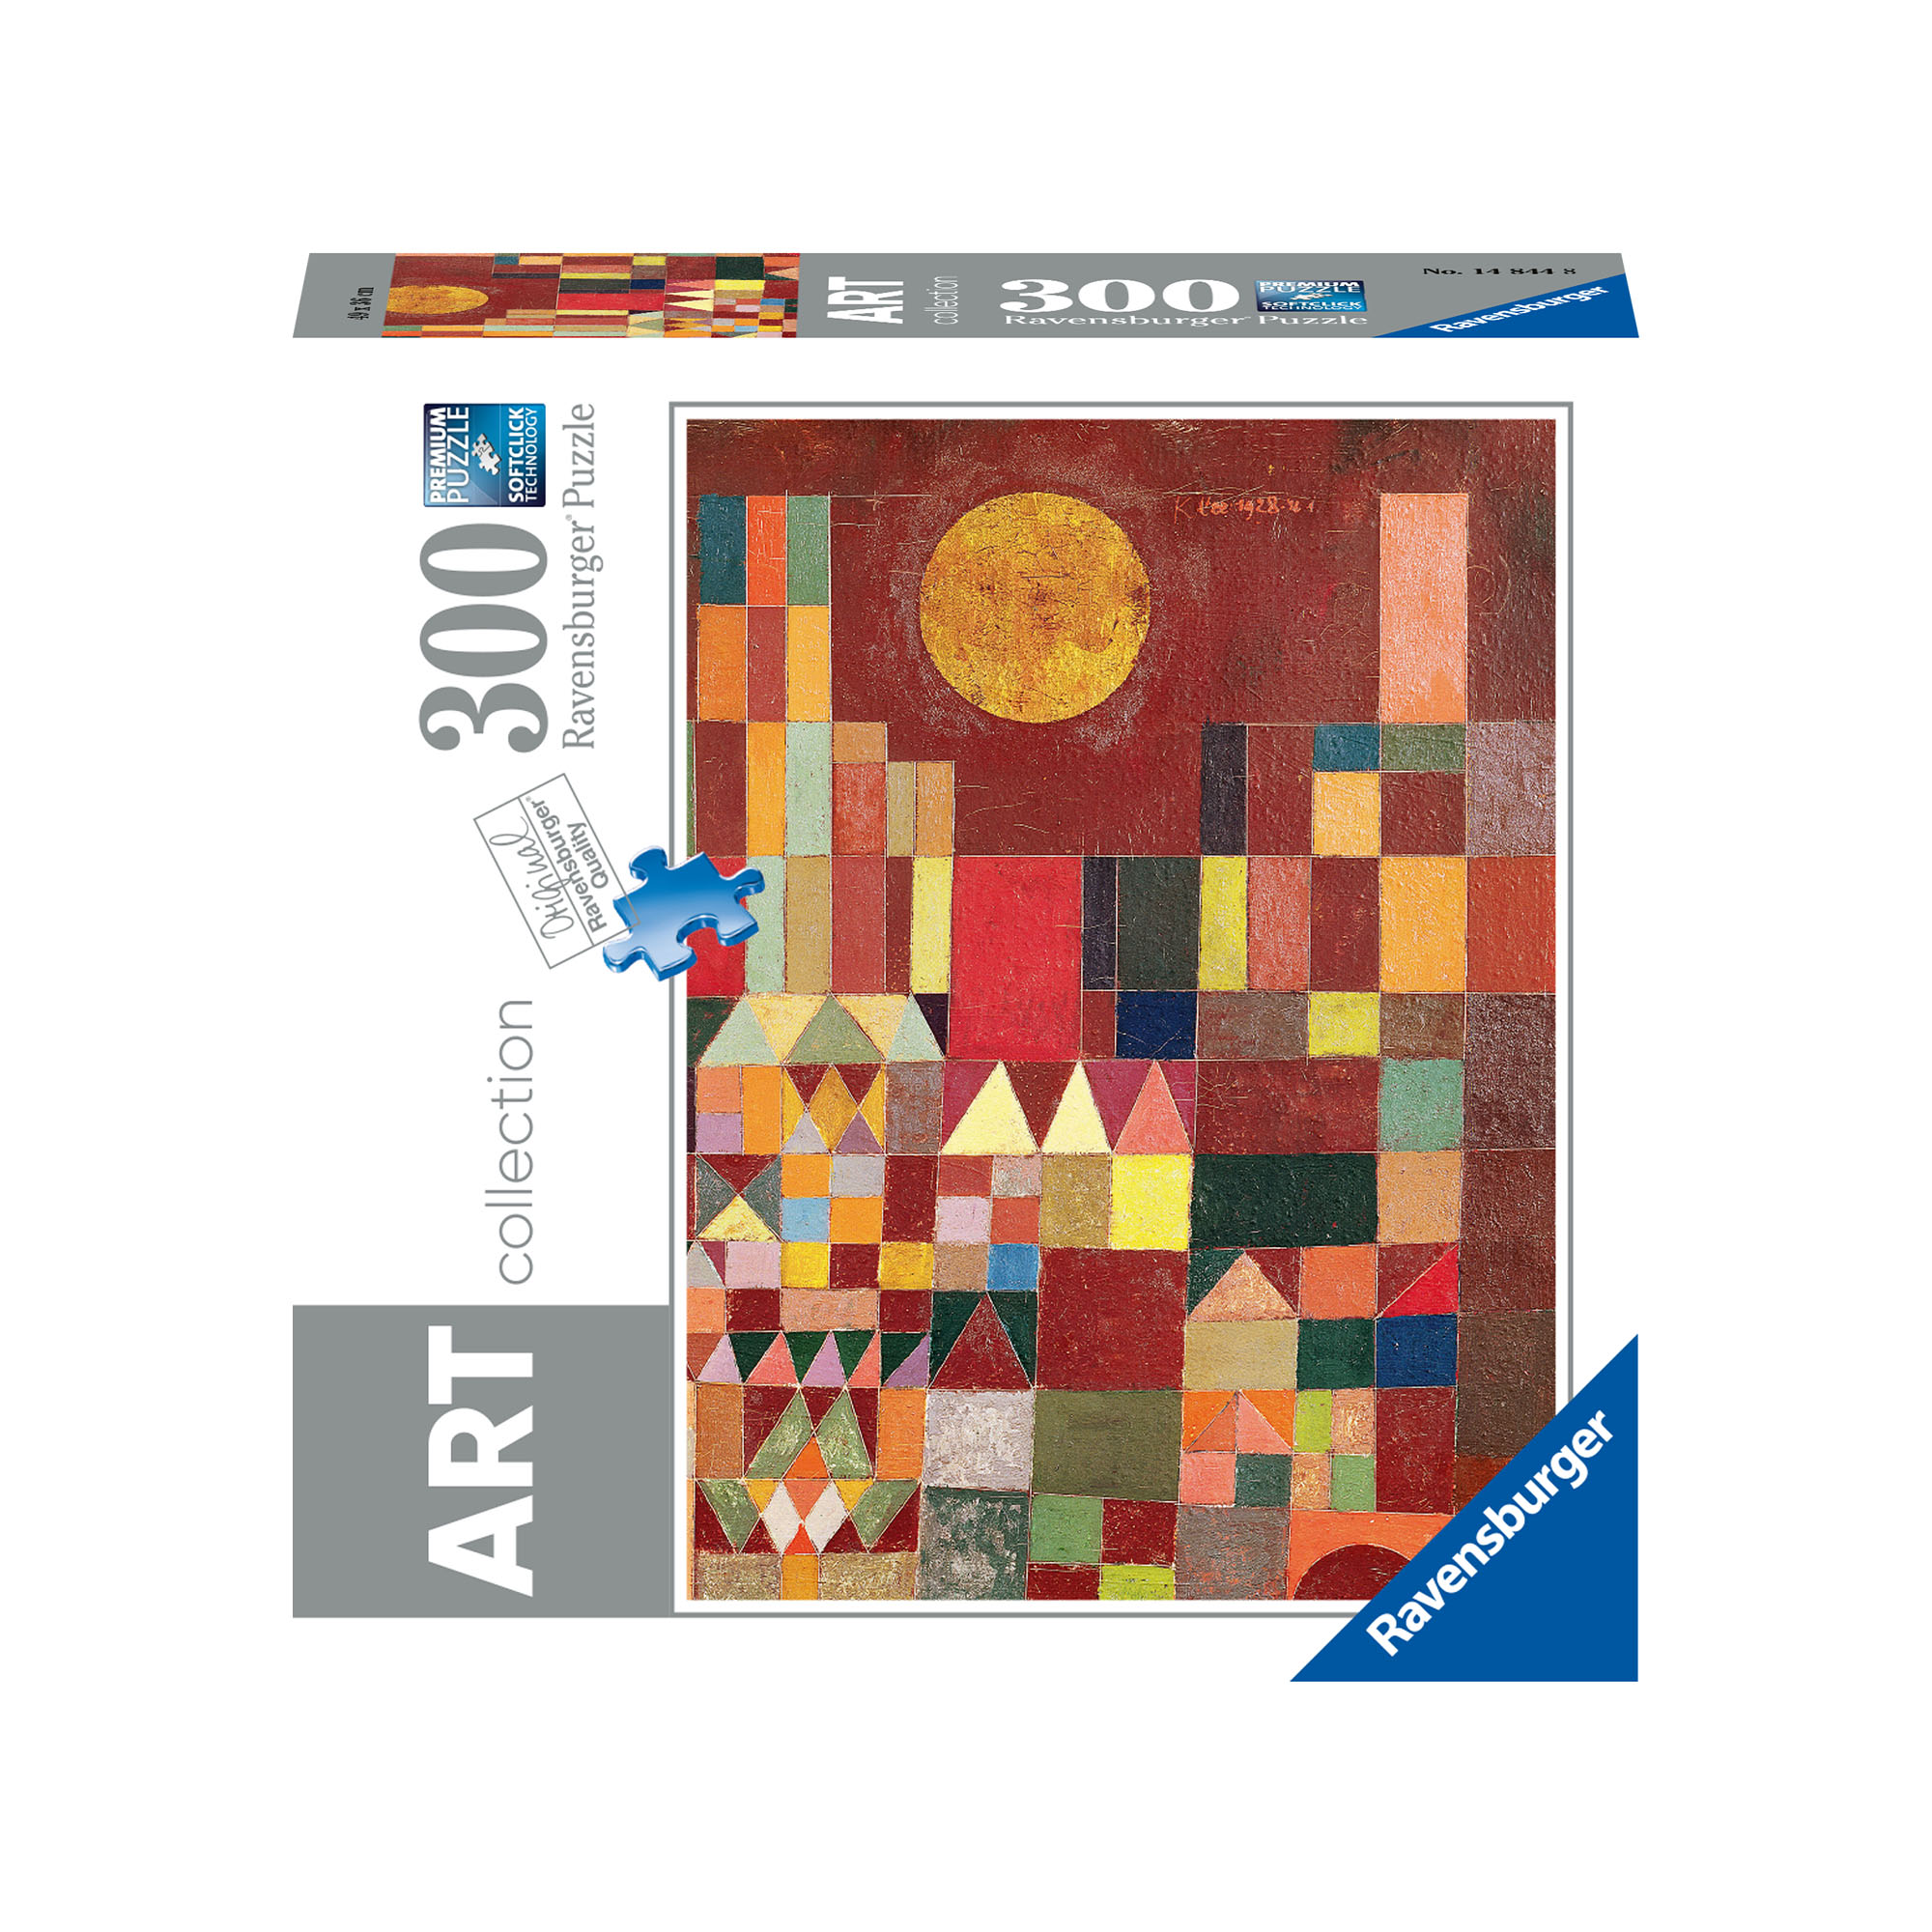 Ravensburger Puzzle 300 pezzi 14844 - PAUL KLEE : CASTLE AND SUN, , large